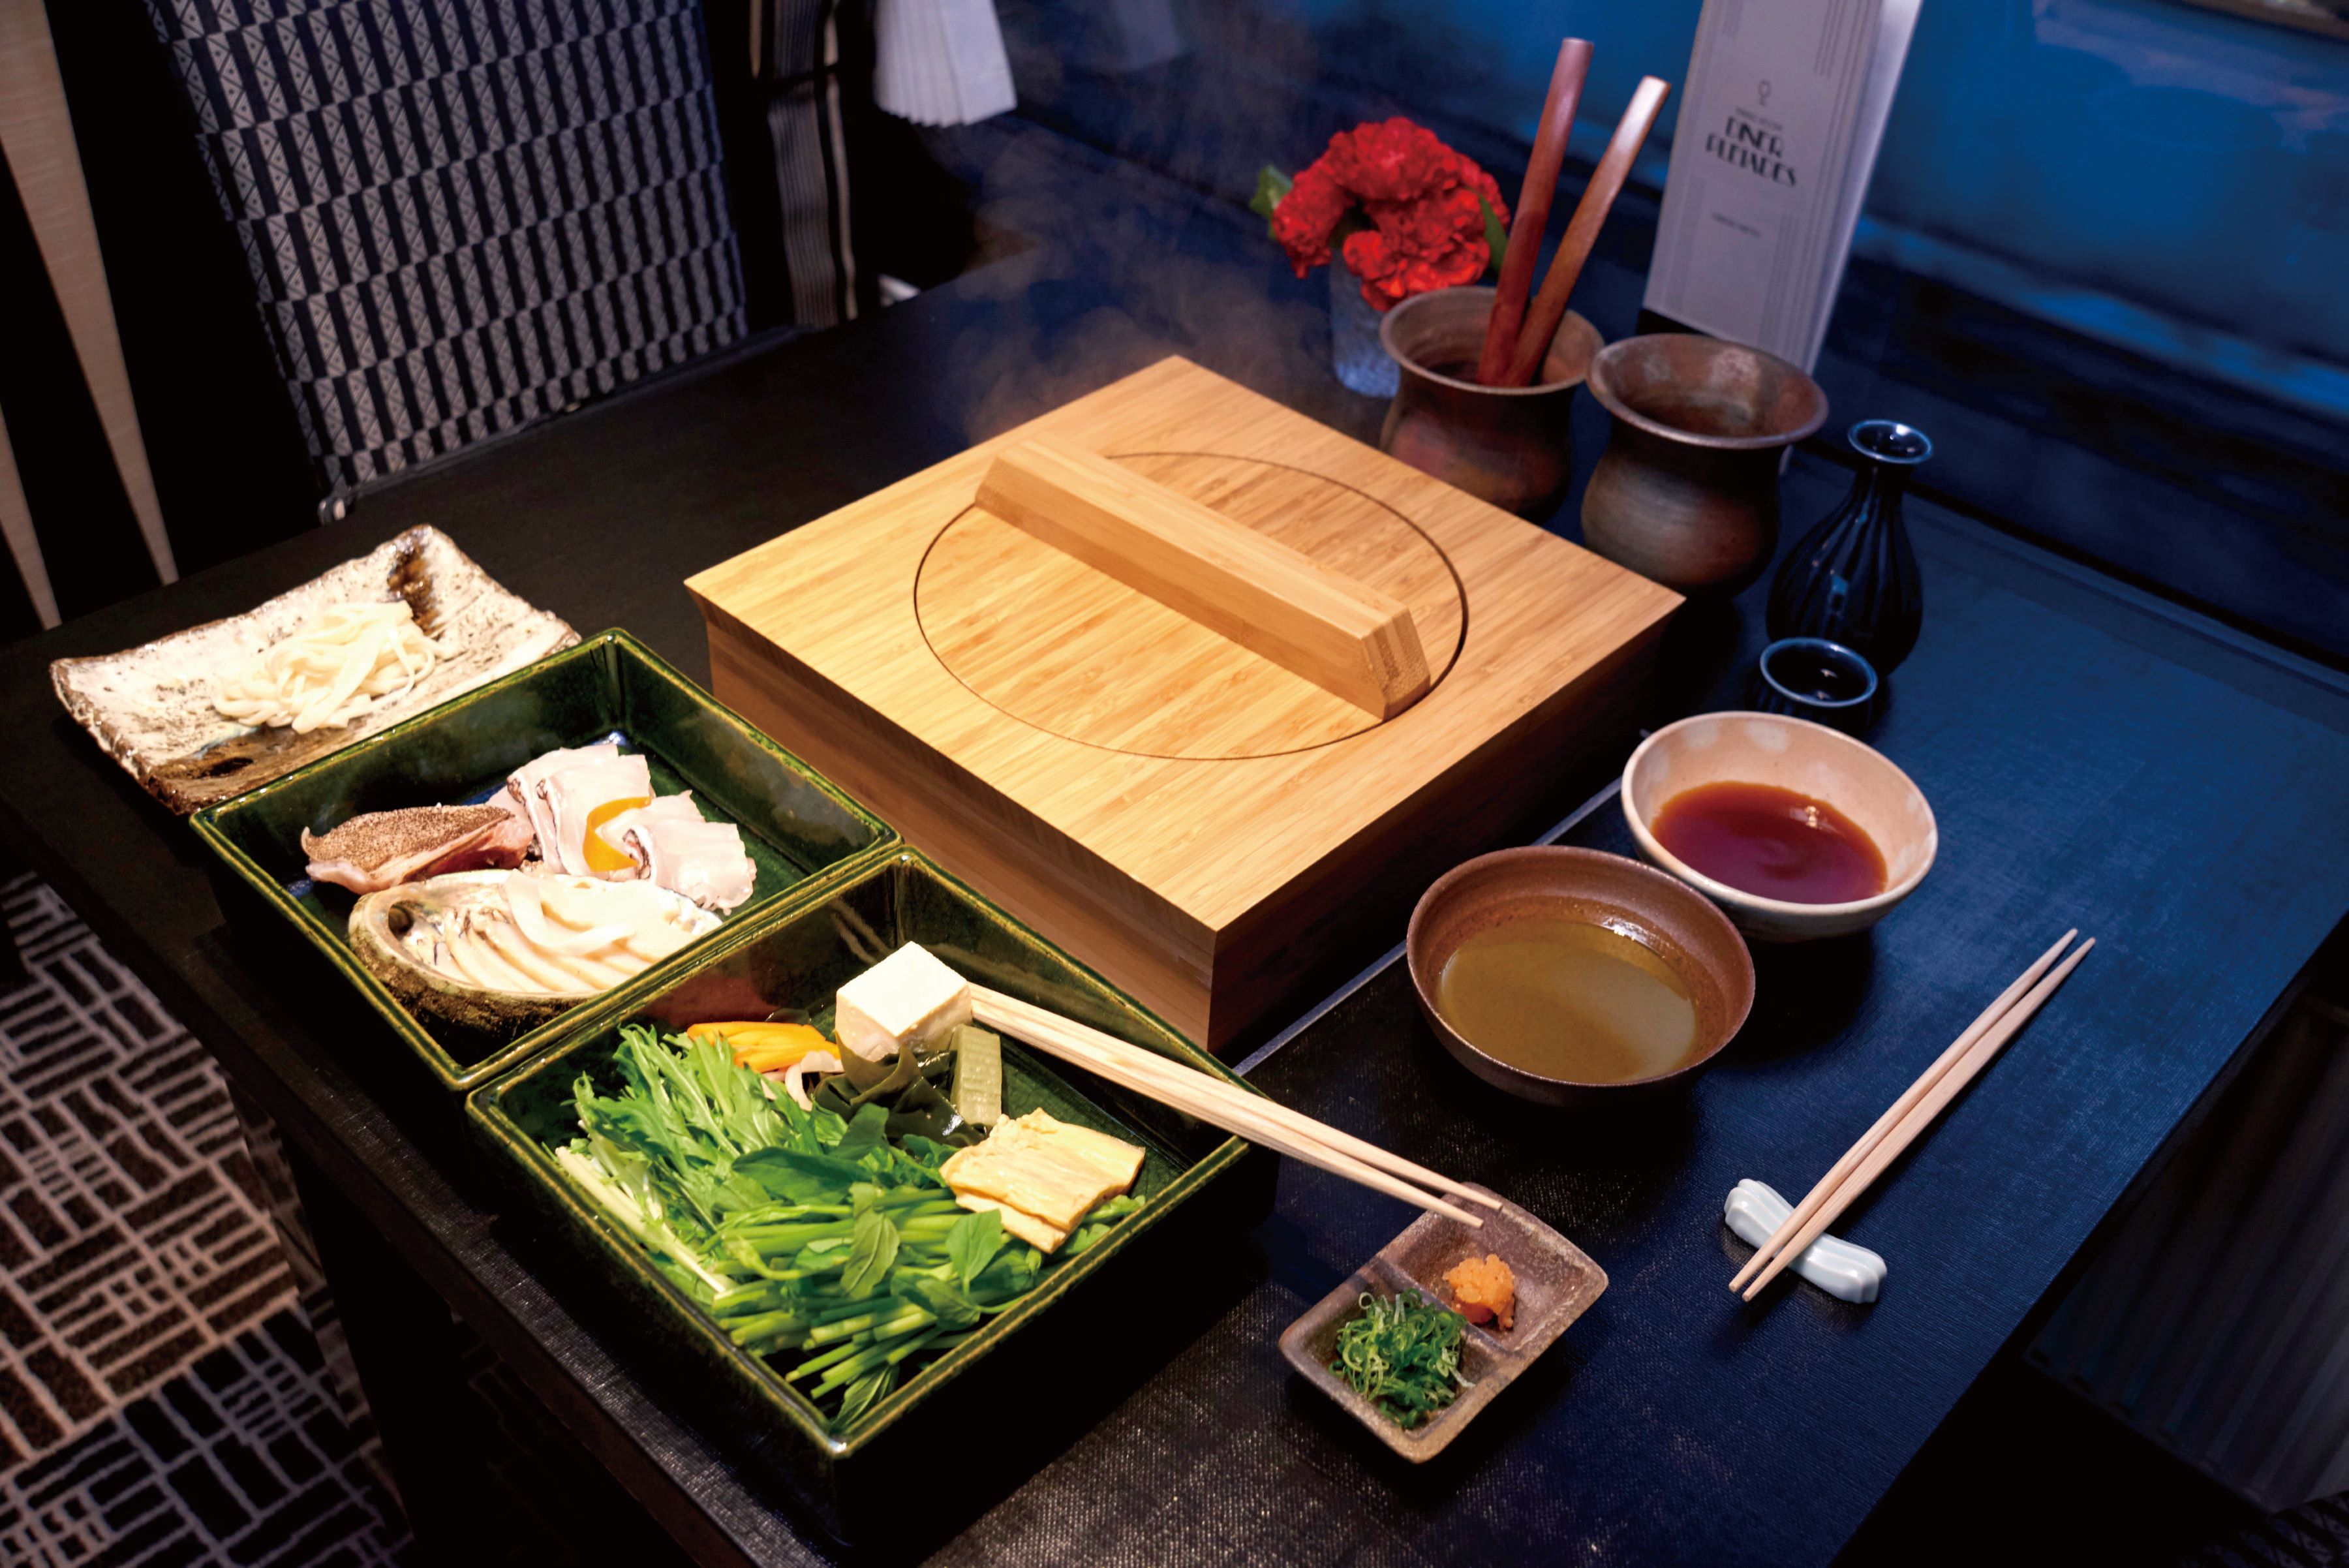 车上料理安排和食名店「菊乃井」，以传统食材结合独创烹调，探索料理的色与味，创造新风貌。图/曙光瑞风号提供